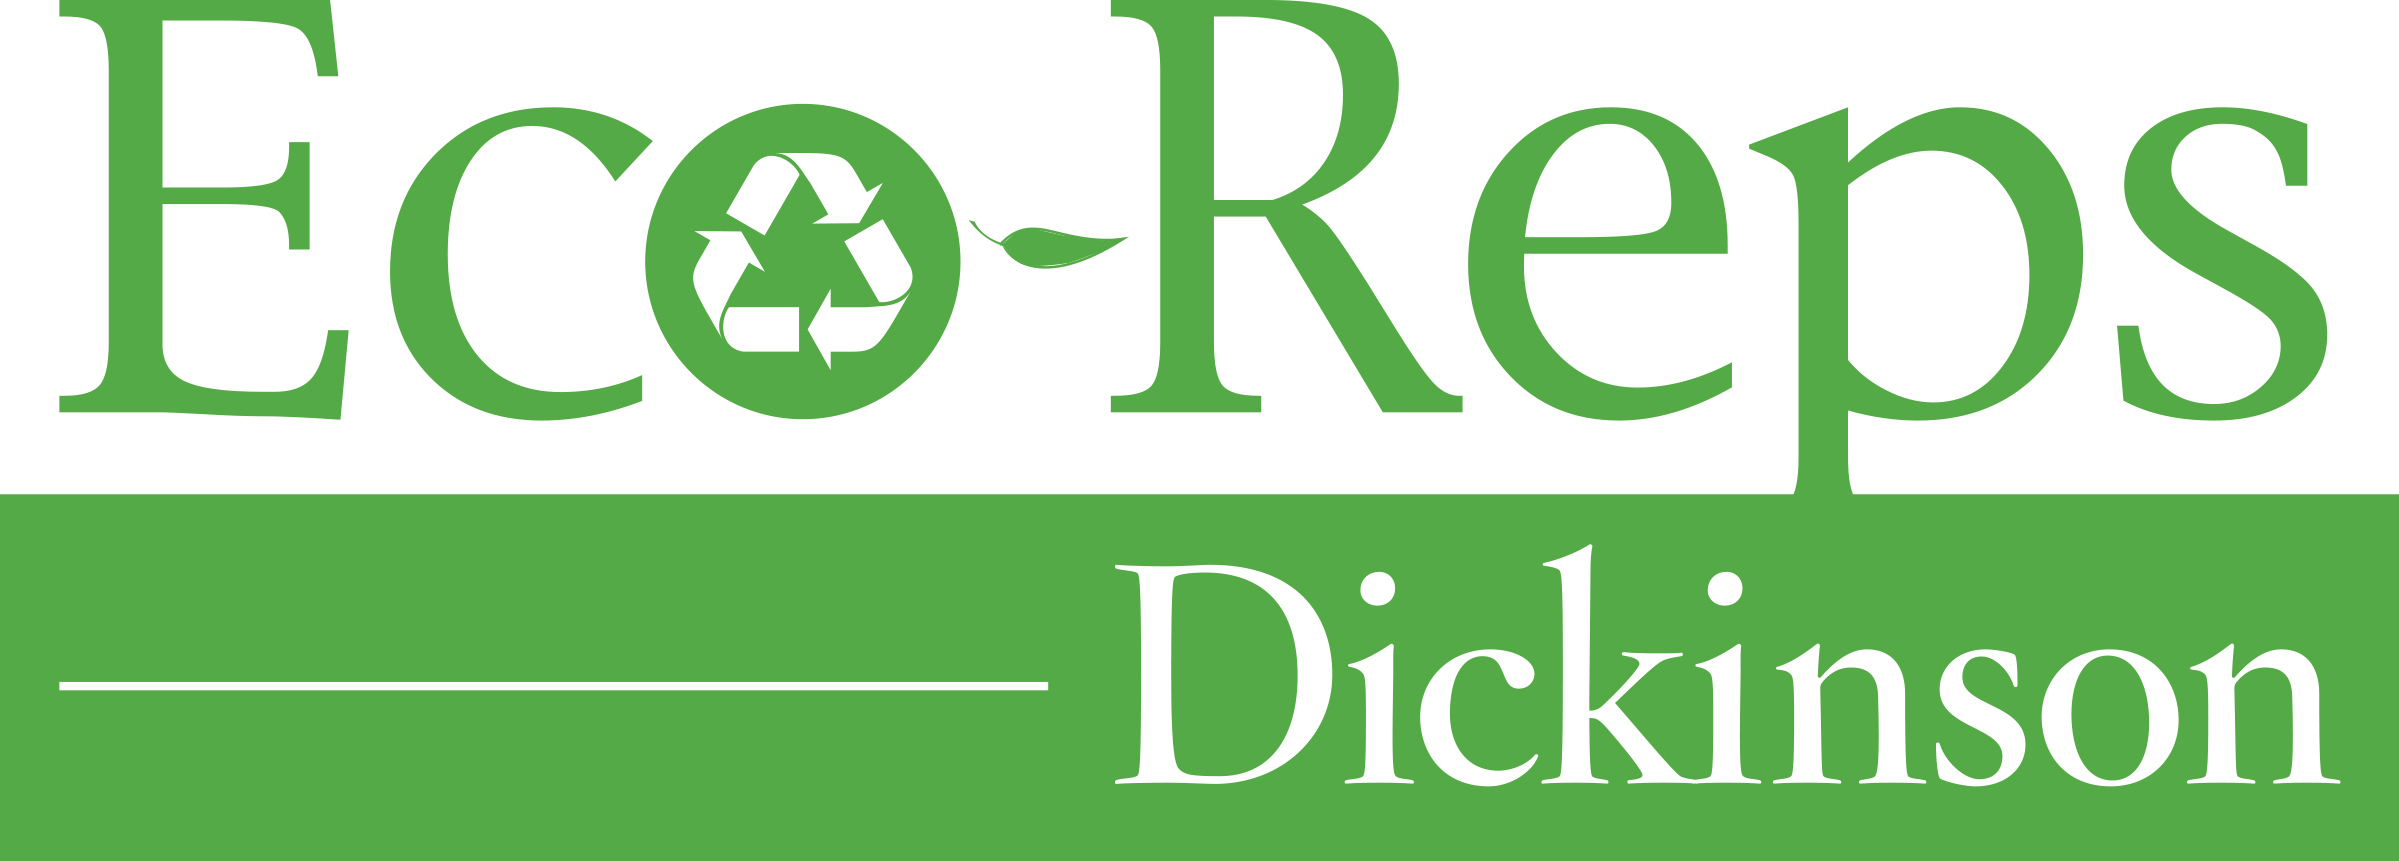 Dickinson Eco-Reps 